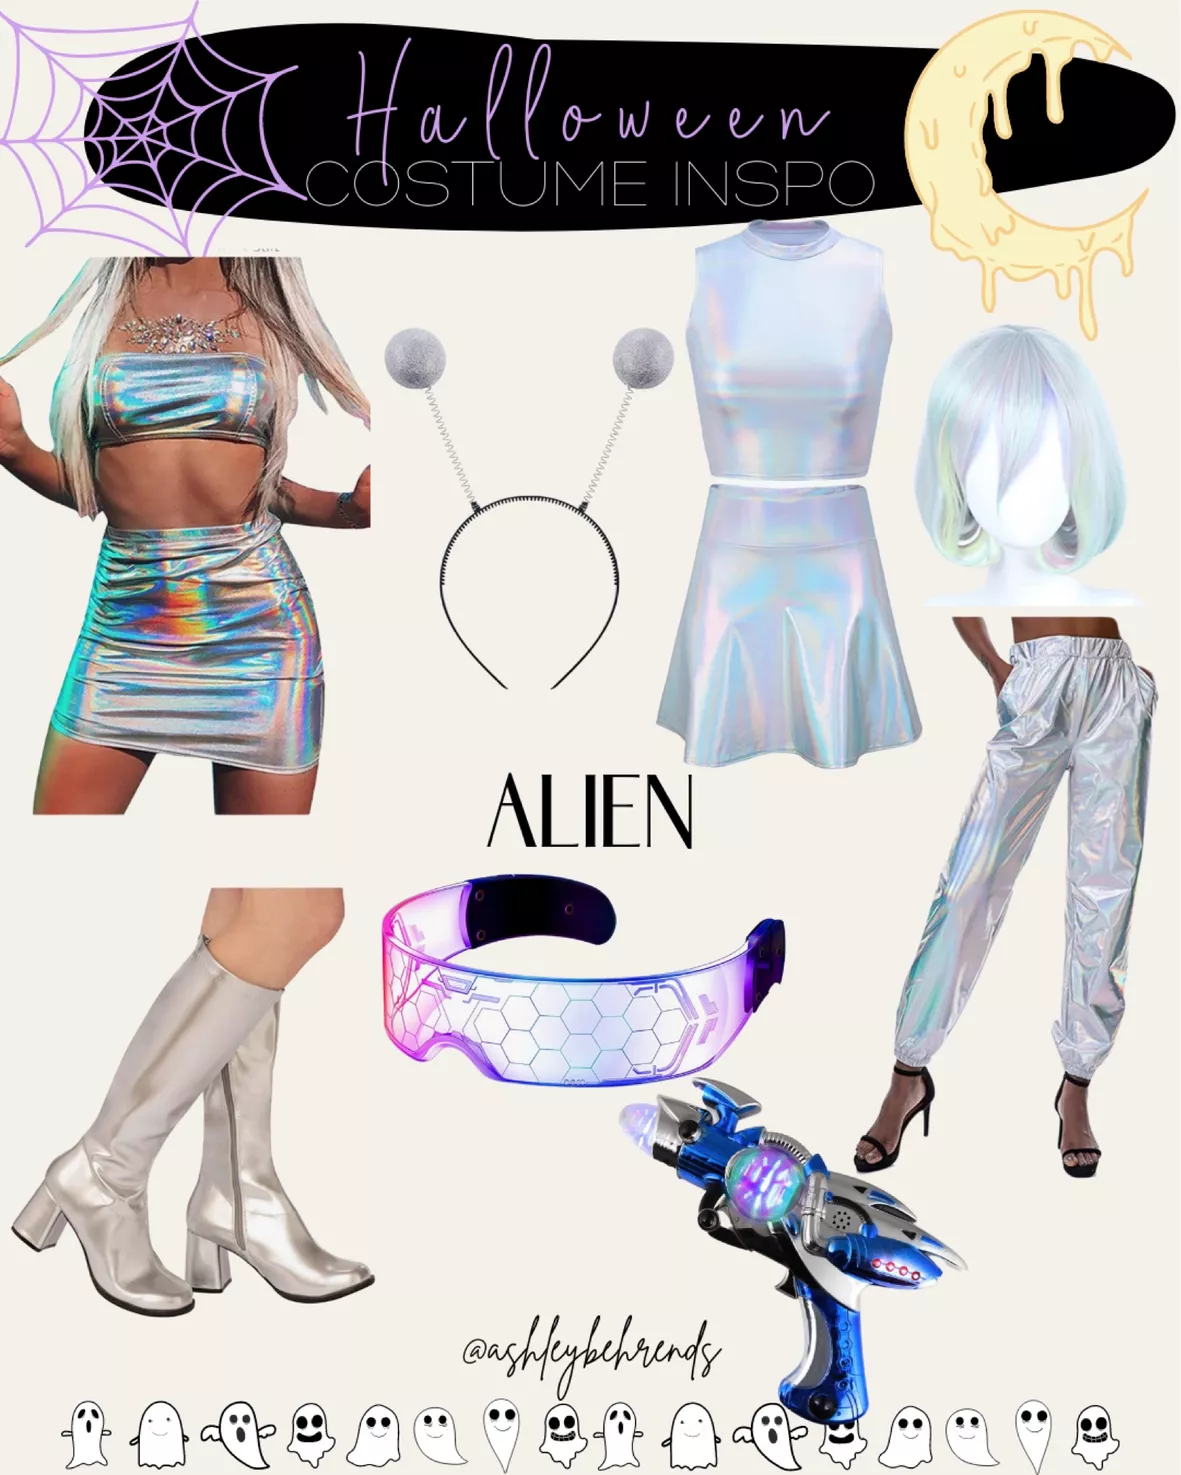 Women's Metallic Space Alien Costume